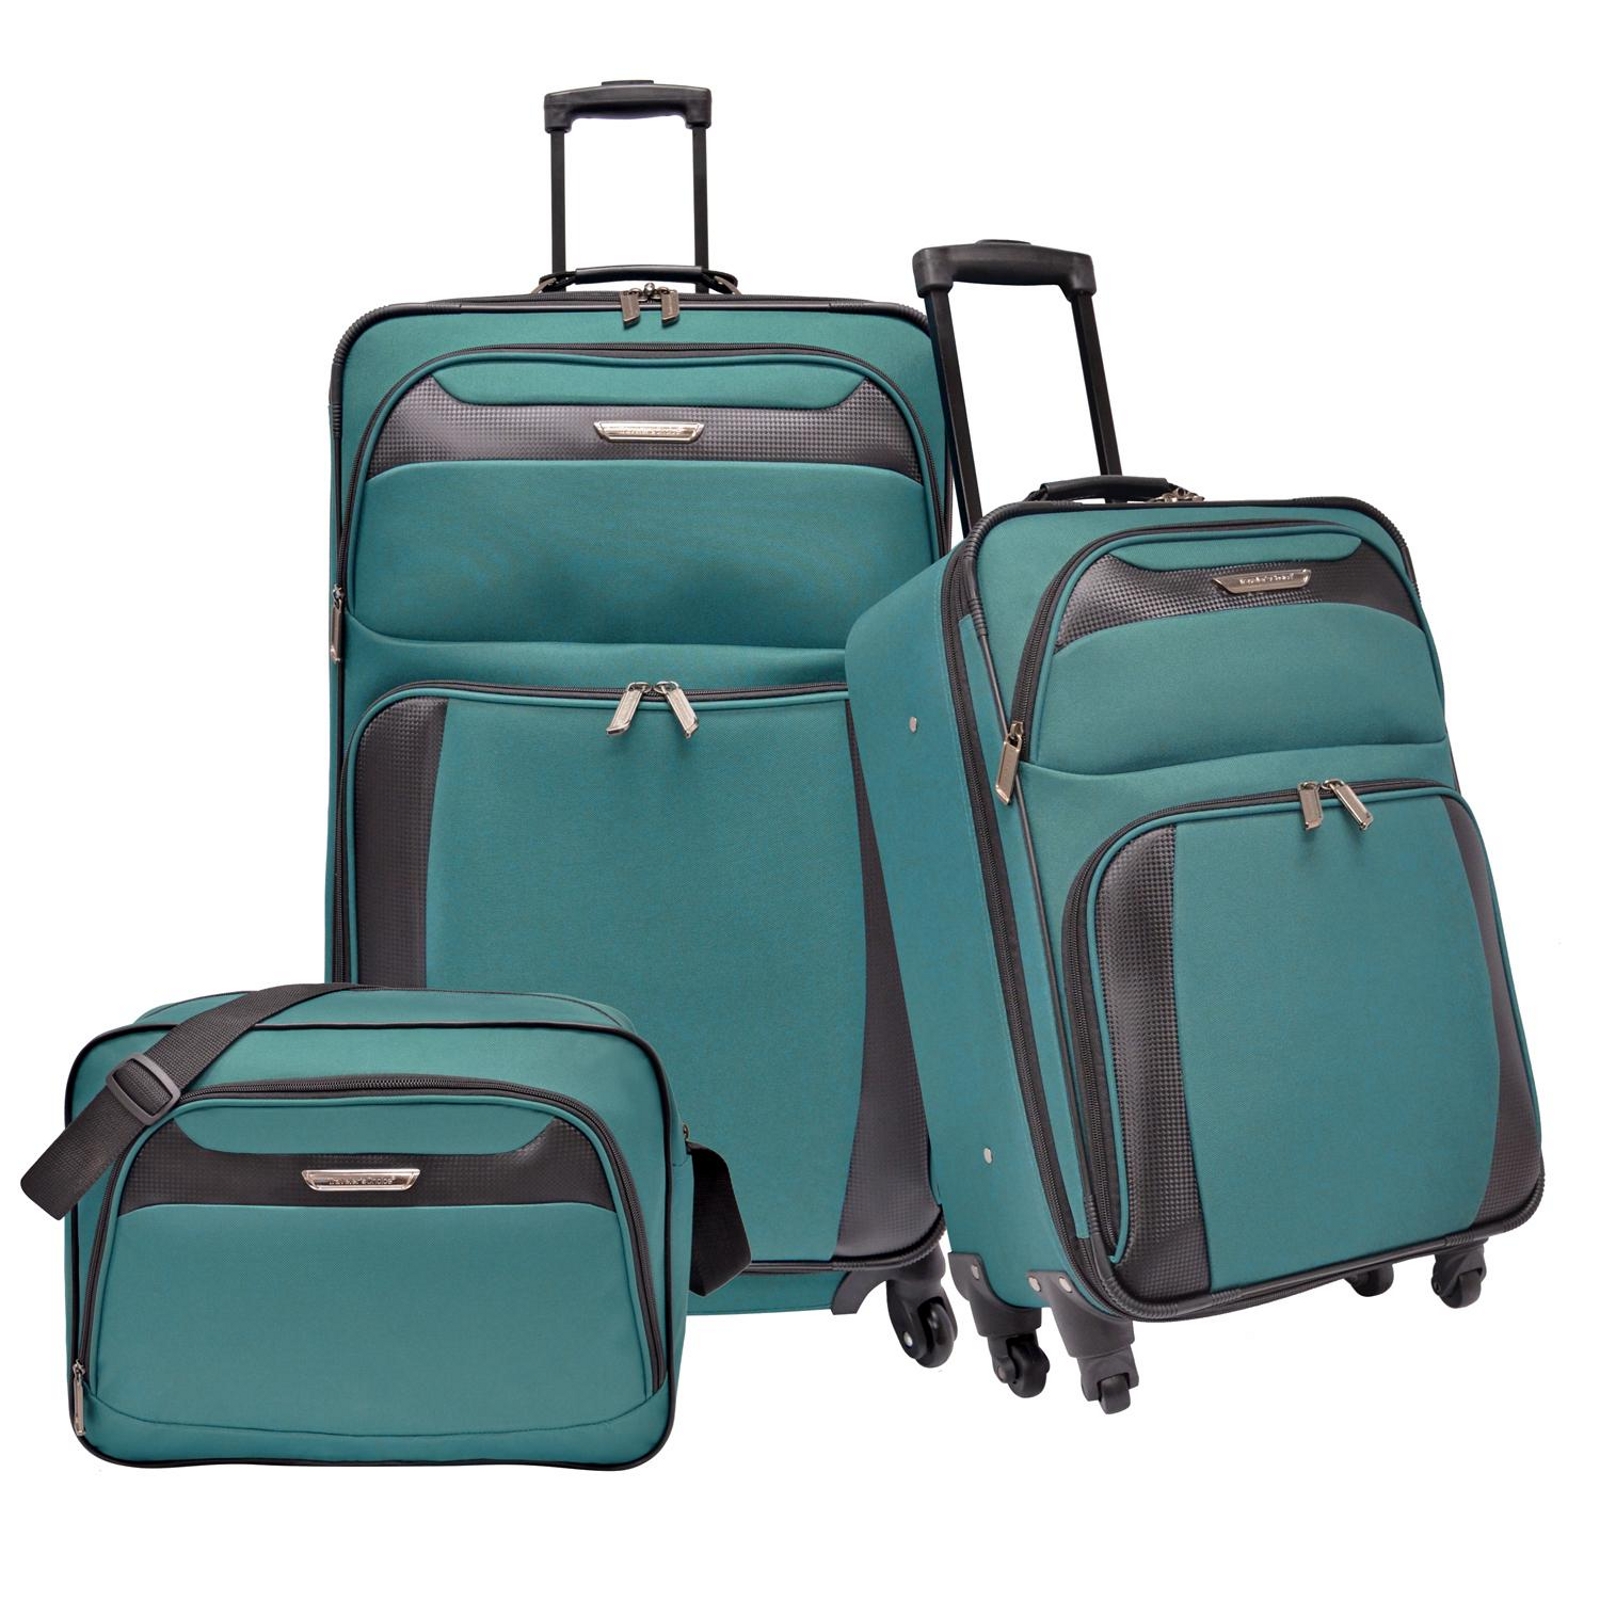 luggage travel sets wholesale